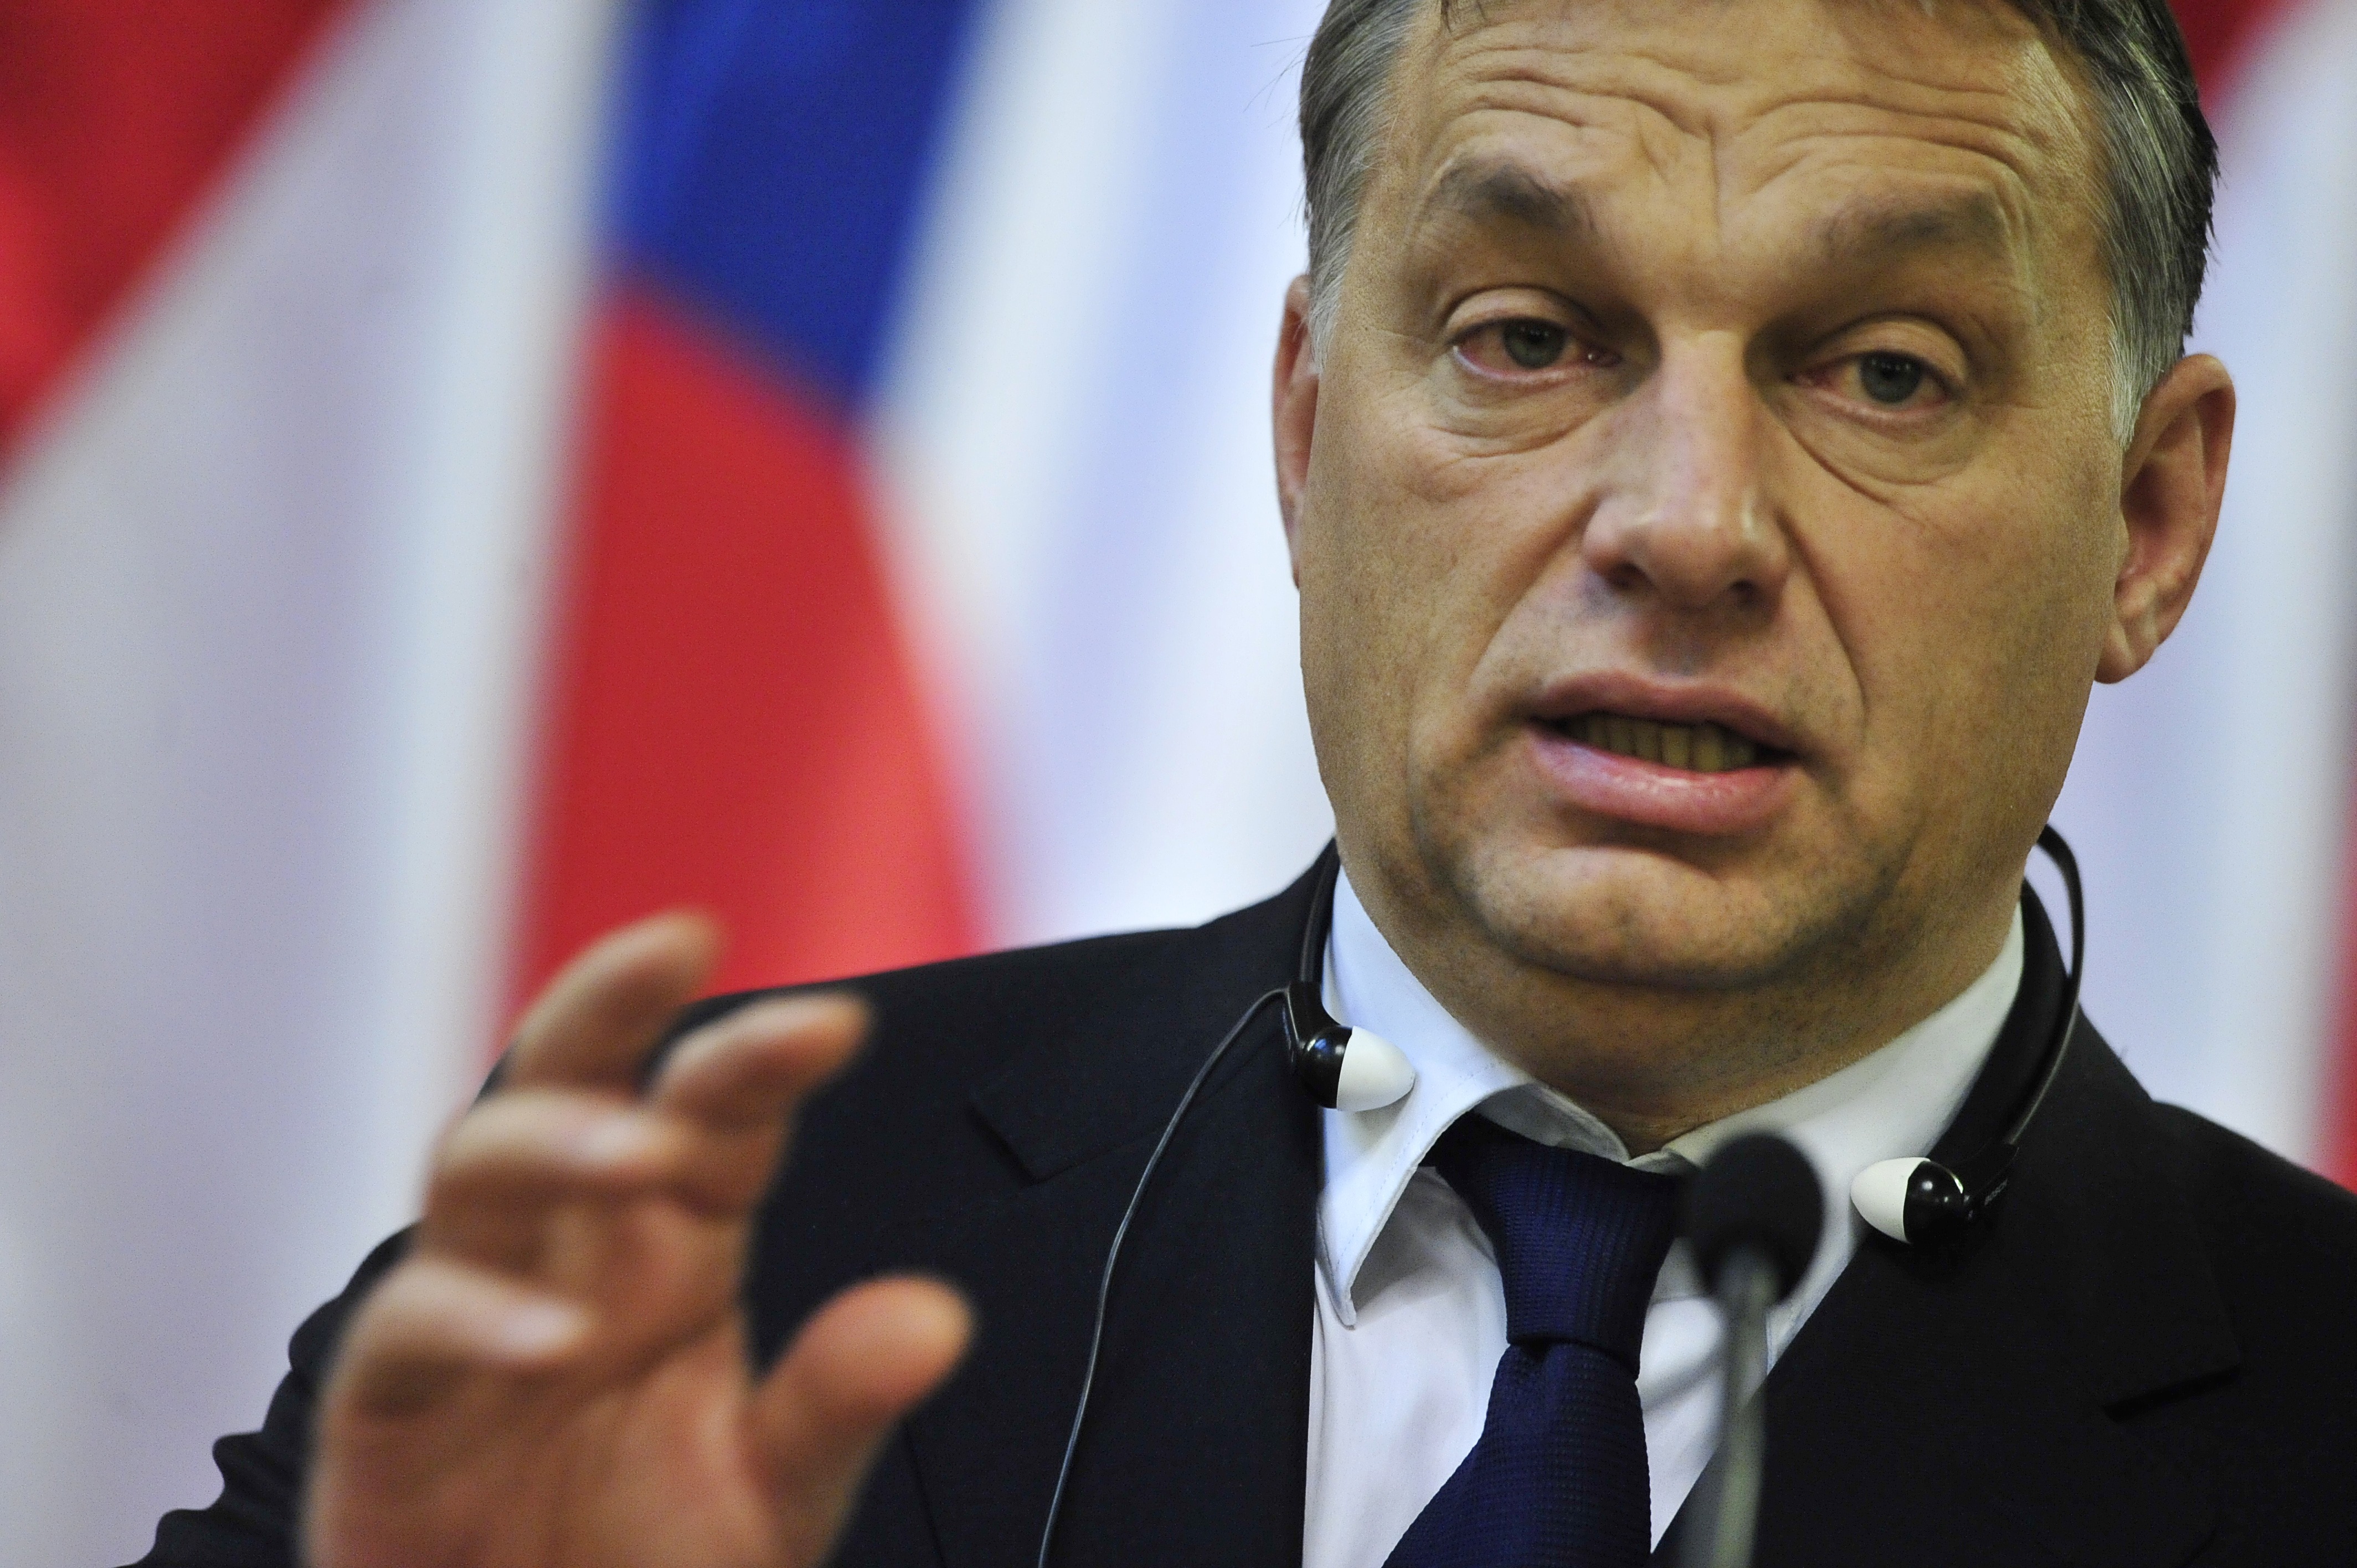 Il premier dell'Ungheria Viktor Orbán su migranti alza muri di filo spinato, gli altri paesi muri di militari